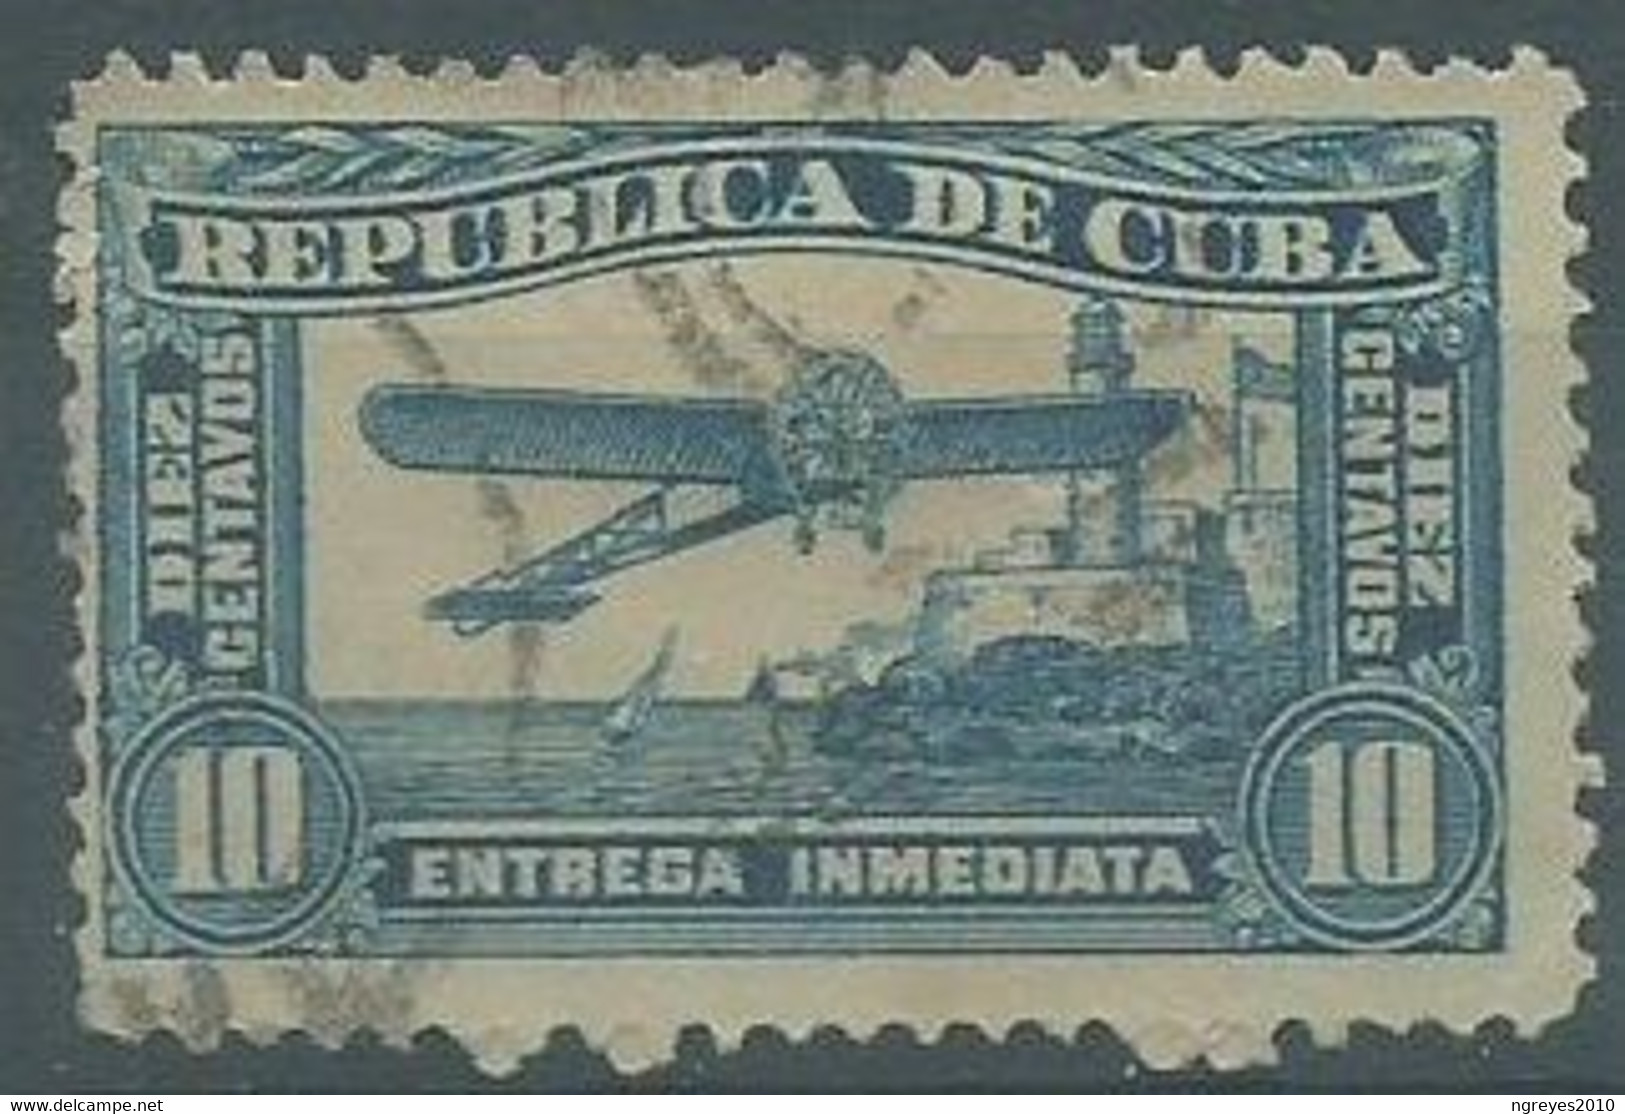 220041871  CUBA.  YVERT  T.P.L.E.  Nº  4 - Postage Due